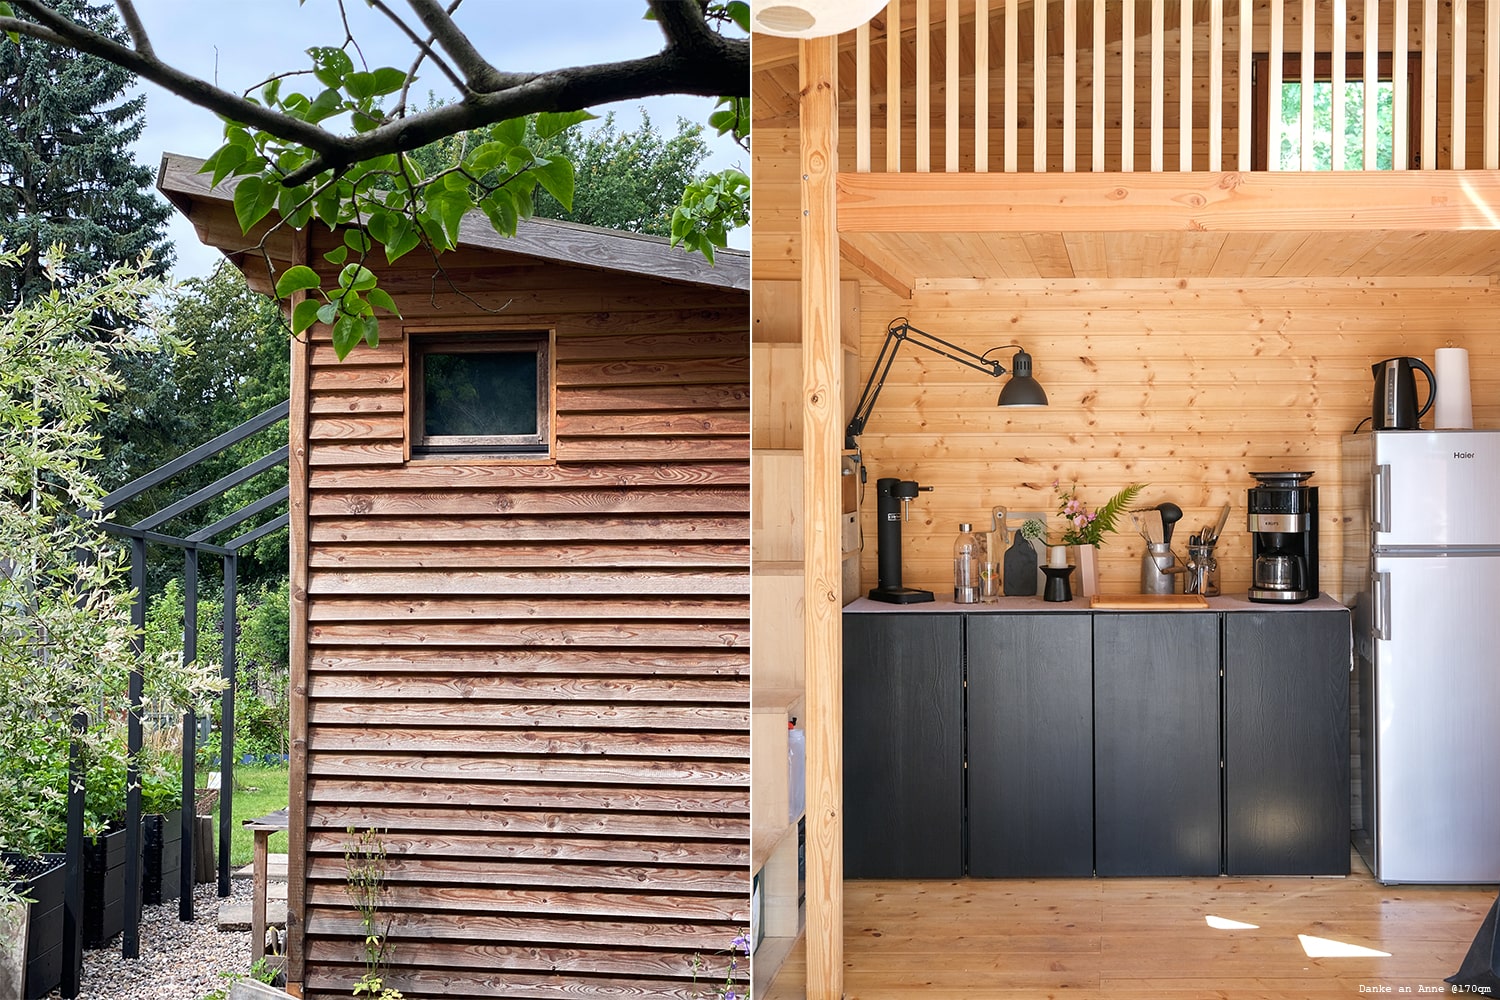 Gartenhaus lackiert mit Holzfarbe in Schwarz.